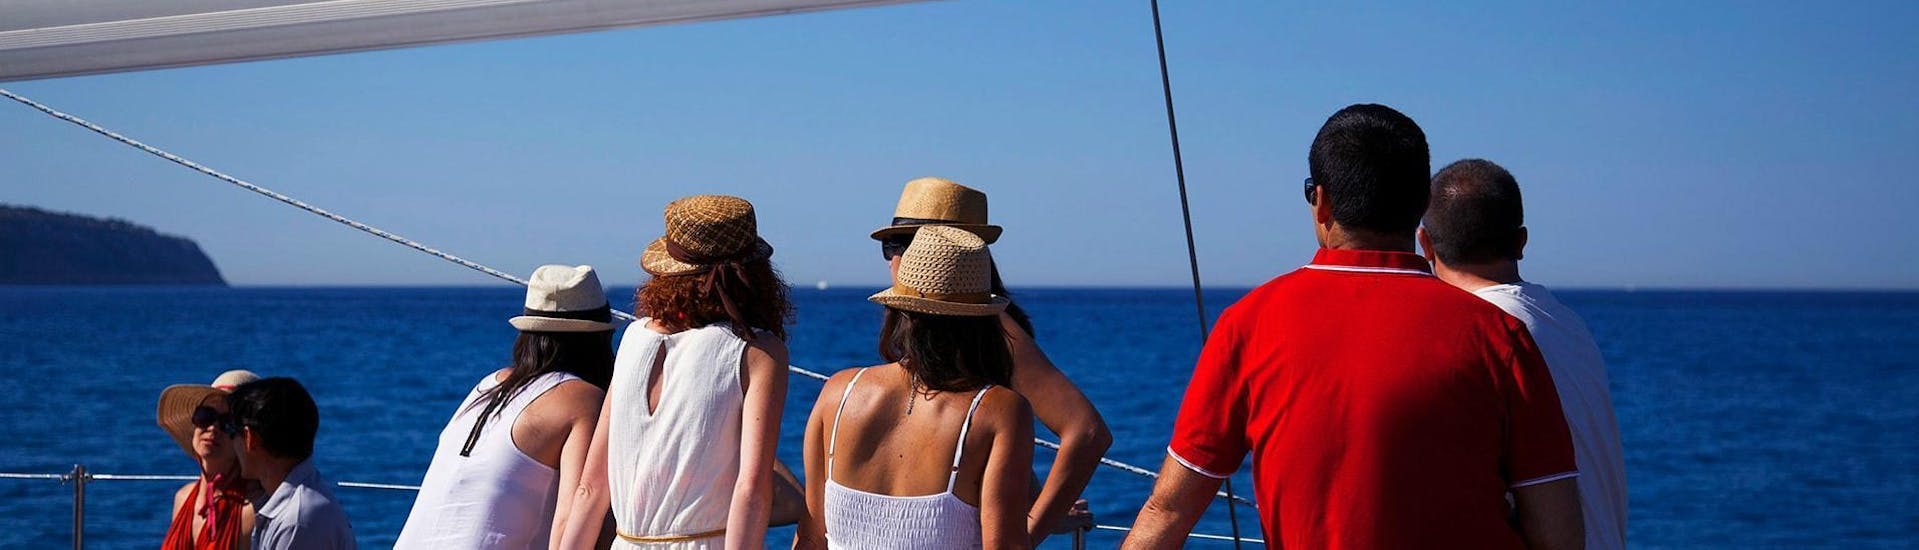 Mensen genieten in de boot tijdens een privé catamarantrip in de baai van Palma met Oasis Catamaran Mallorca.